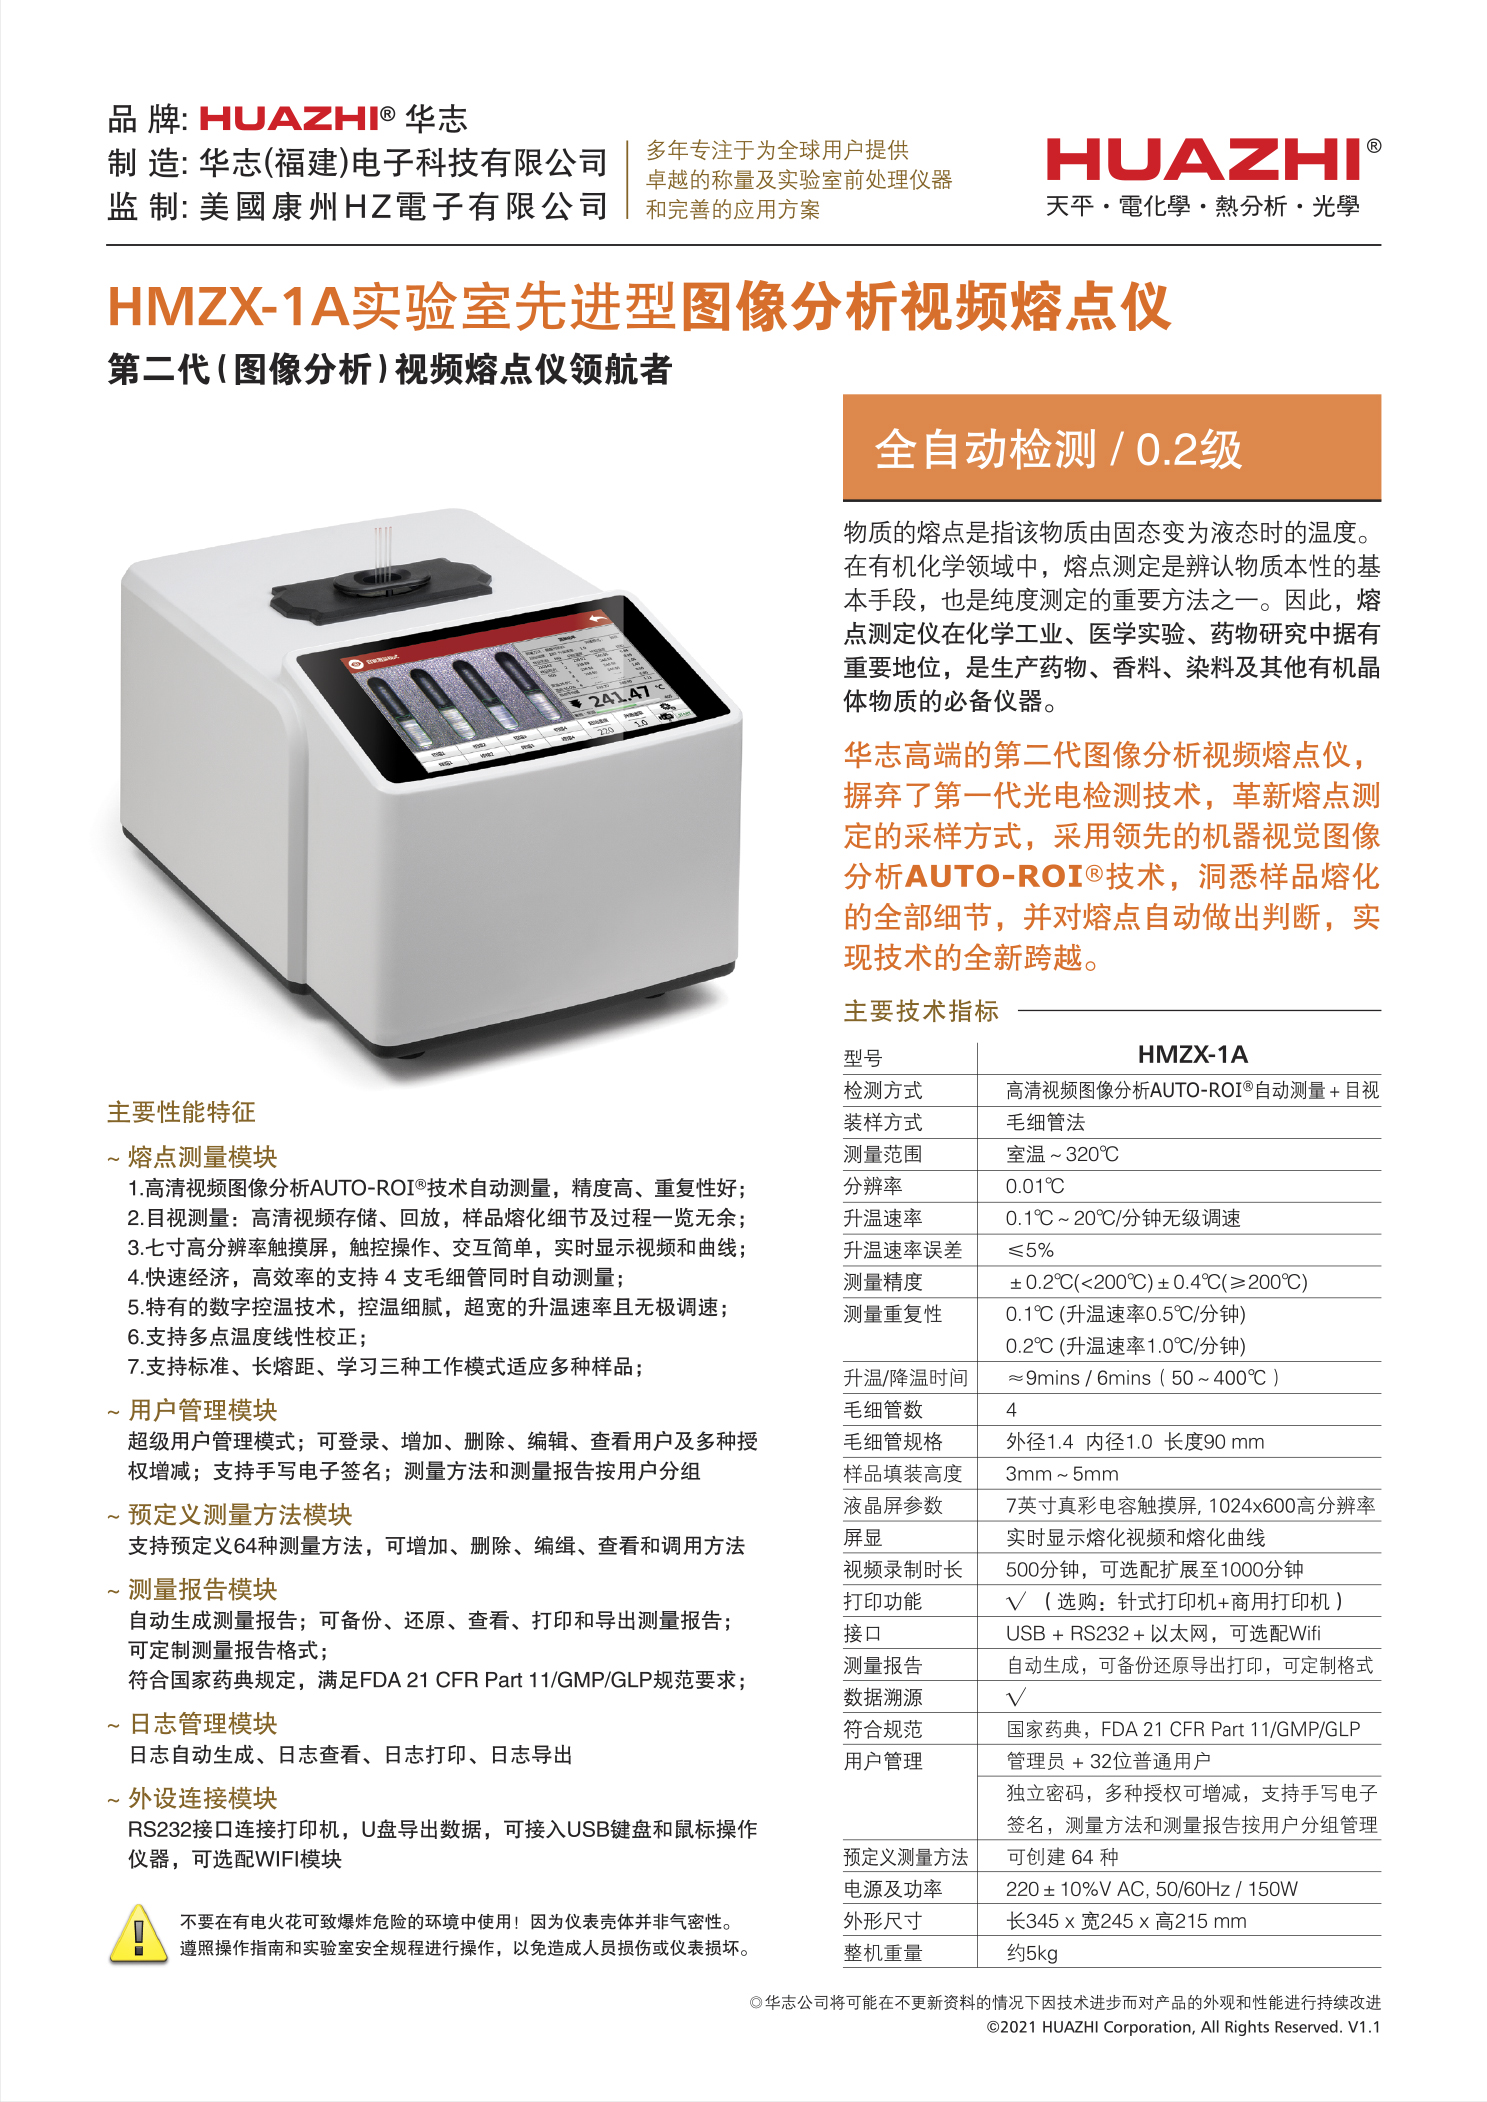 視頻熔點儀HMZX-1A單機詳情(中文v1.1).jpg